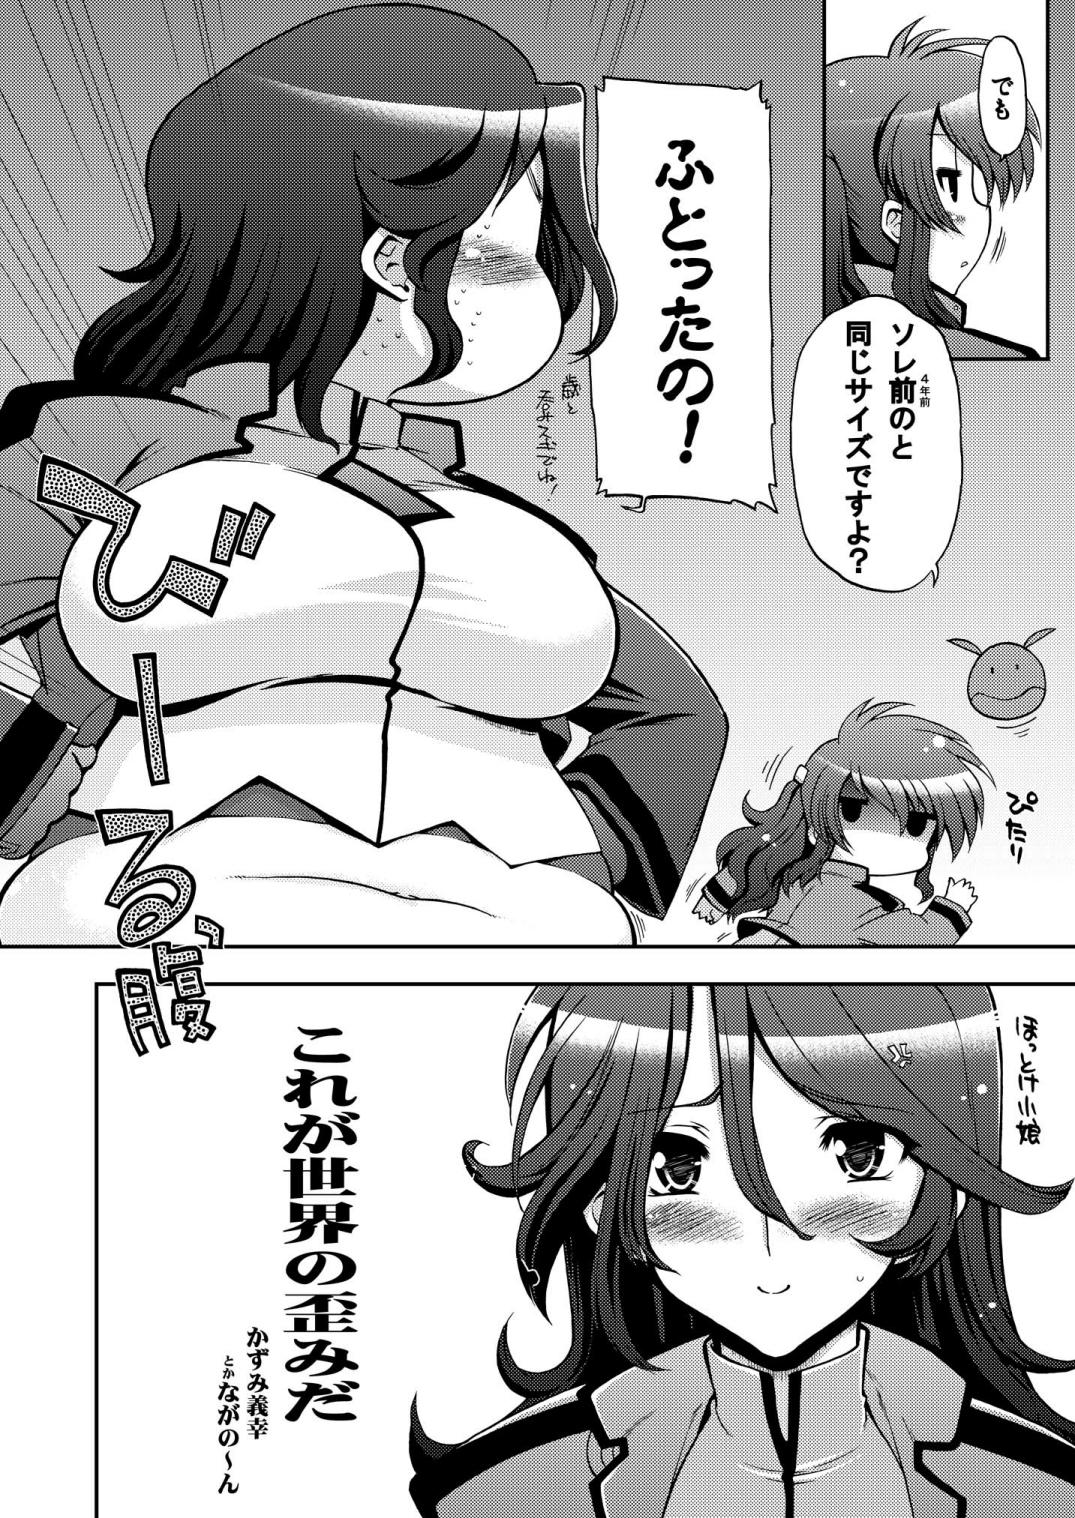 Hoe Korega Sekai no Hizumida - Gundam 00 Club - Page 5